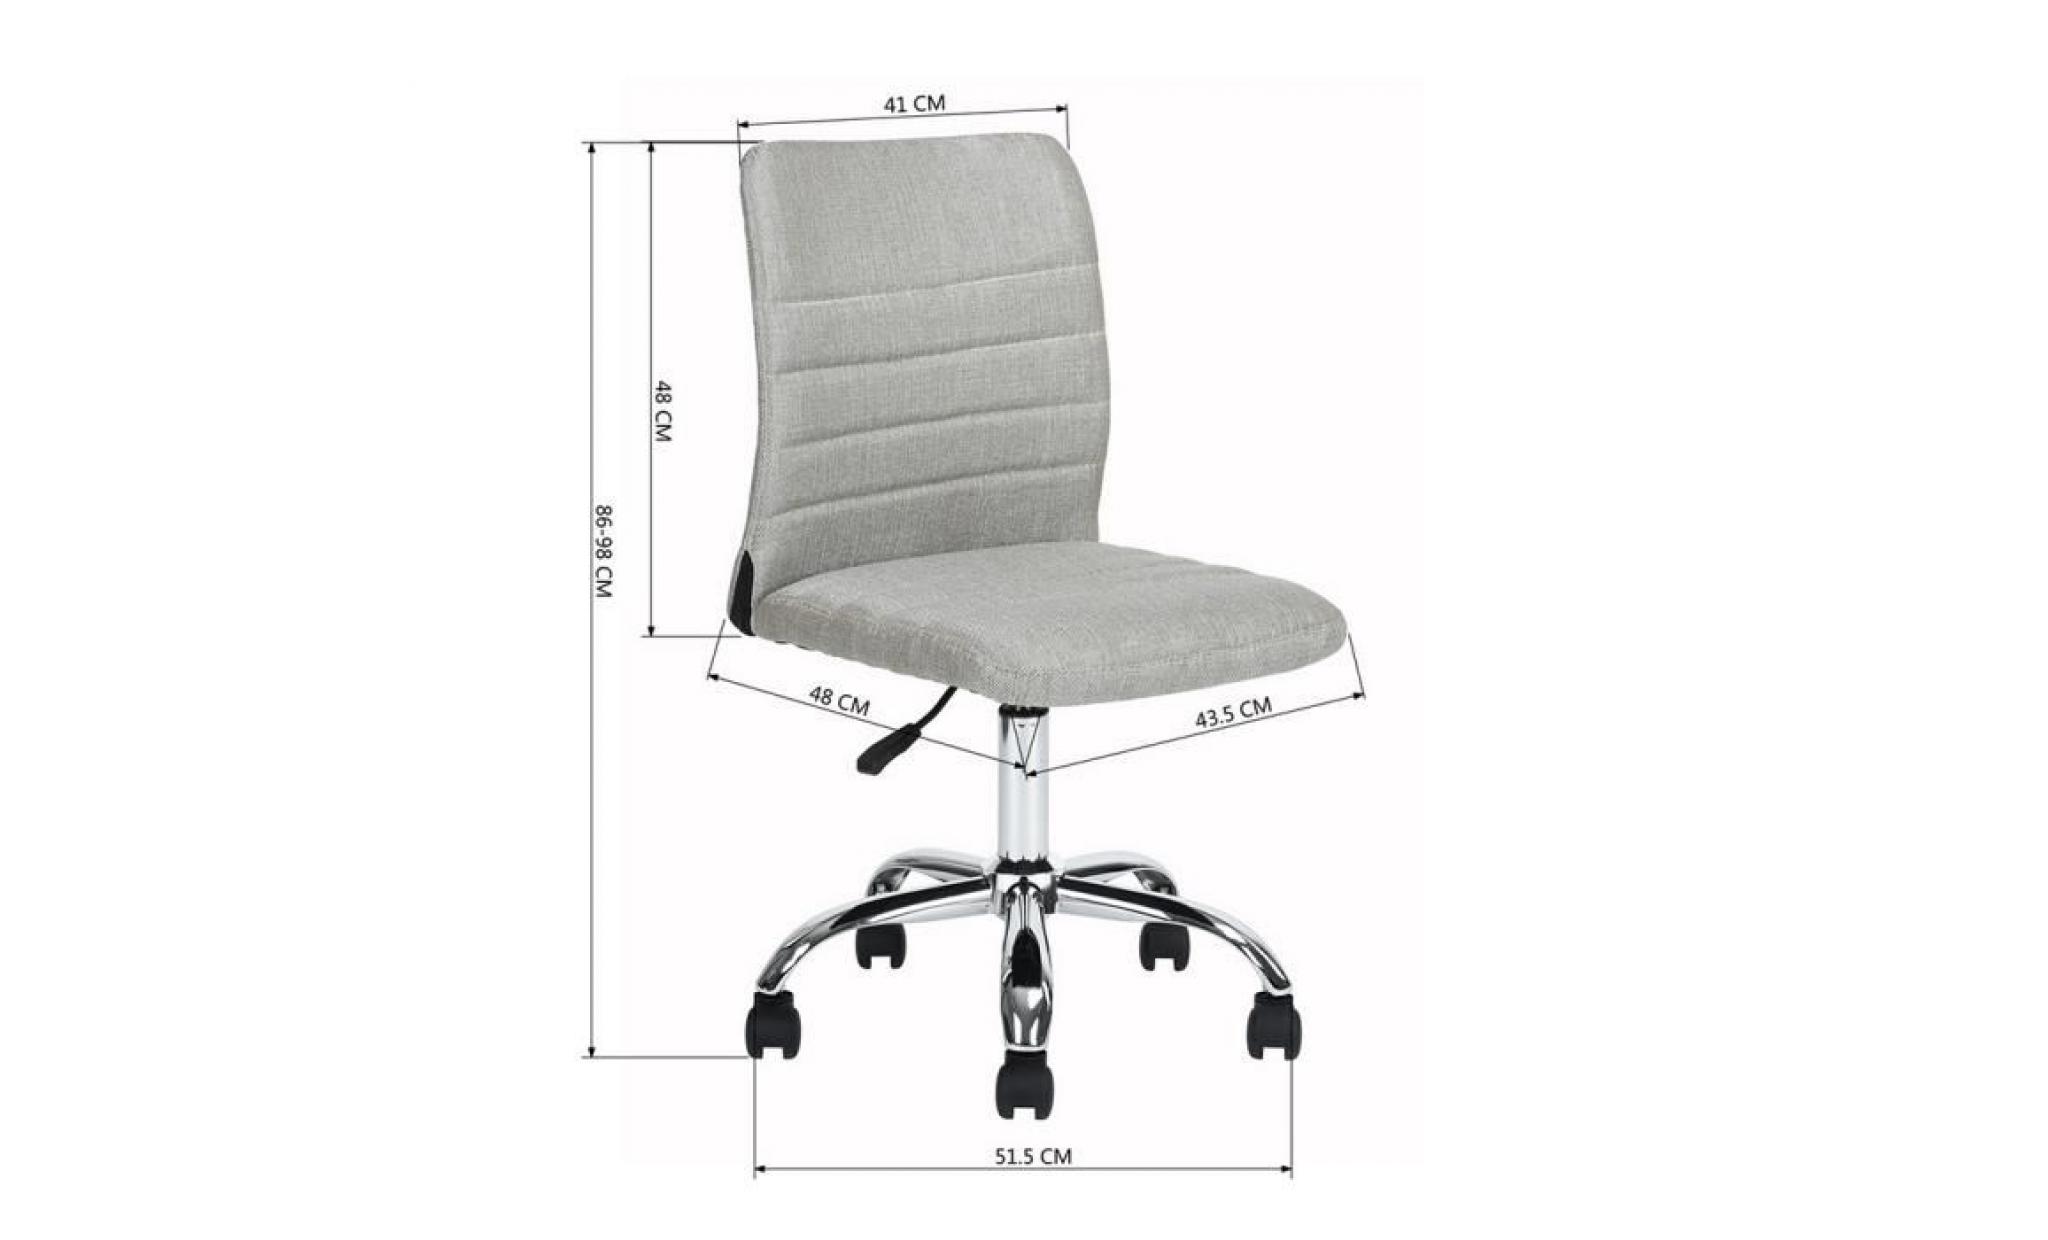 furnish 1 chaise de bureau gris doré tissu métal chromé hauteur réglable rouletes pivotantes pas cher